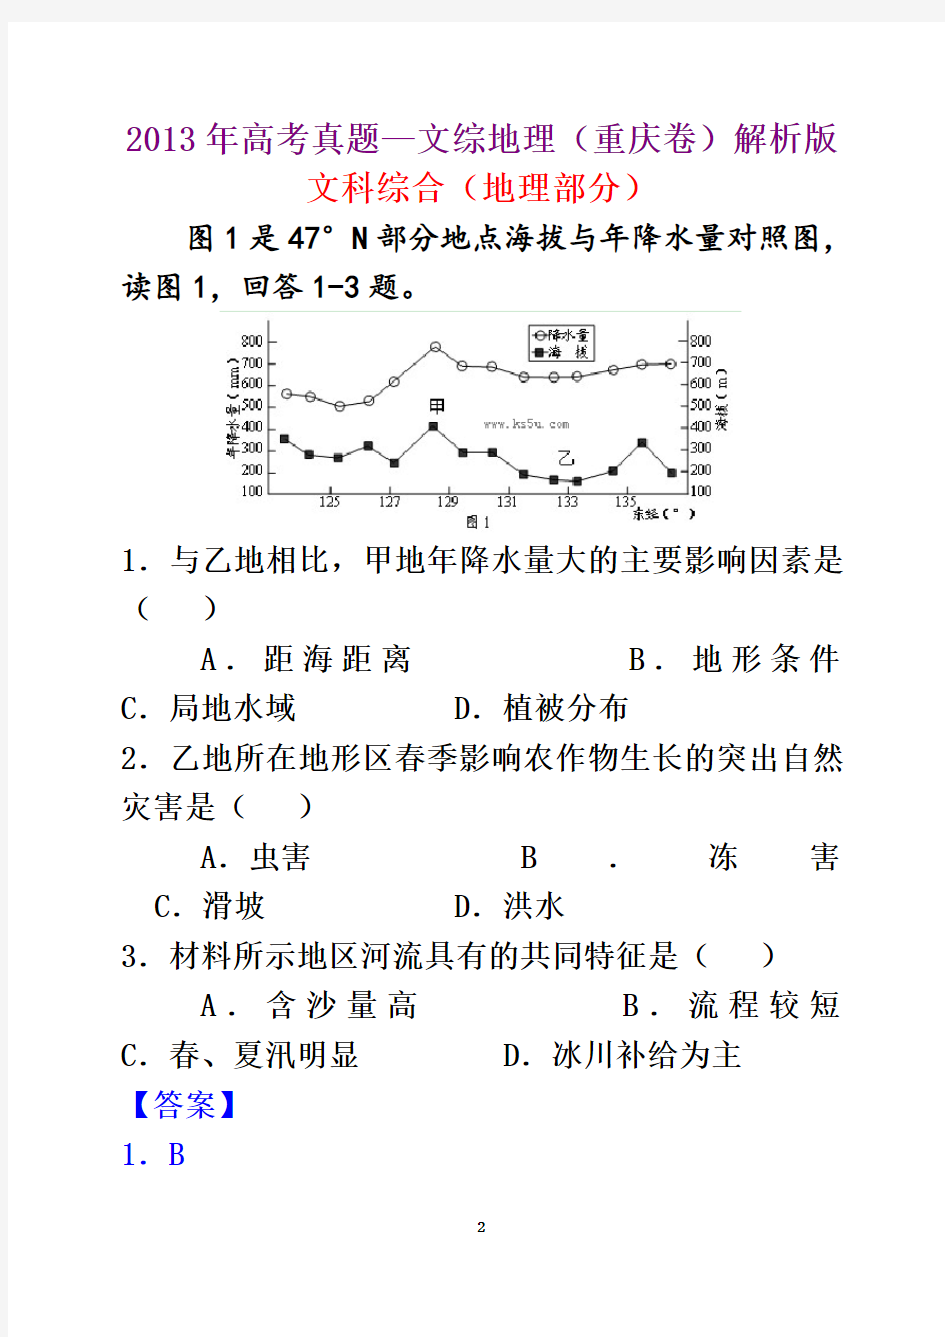 2013年高考真题——文综地理(重庆卷)解析版